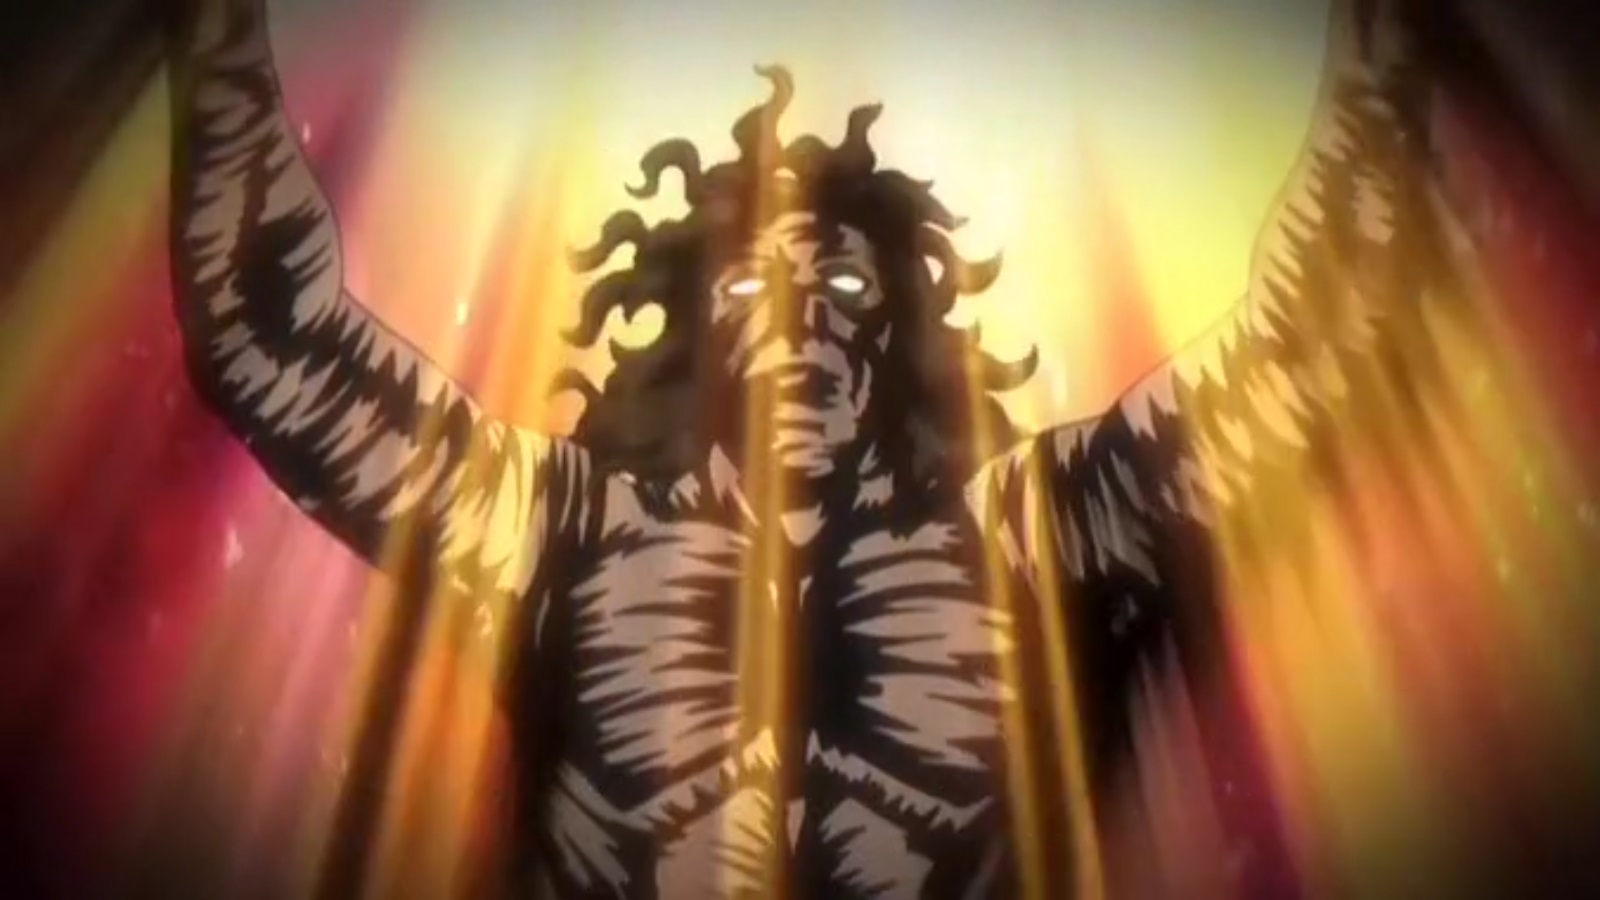 1600px x 900px - Hentai Movie Hot Universe Dark Demon Anime | HentaiMovie.Tv